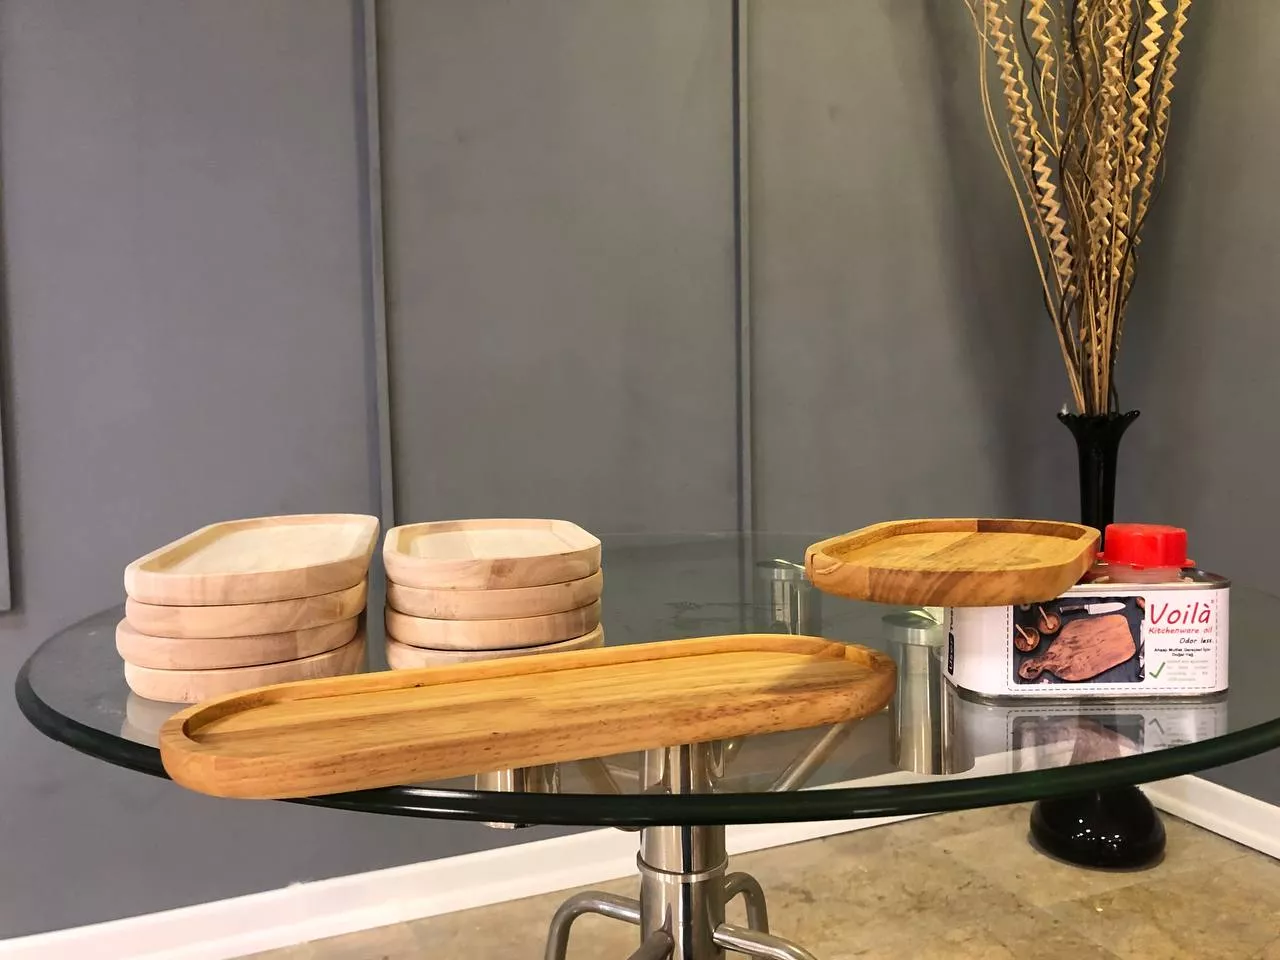 روغن ظروف چوبی گیاهی بی رنگ وویلا مدل Kitchenware حجم 250 میلی لیتر